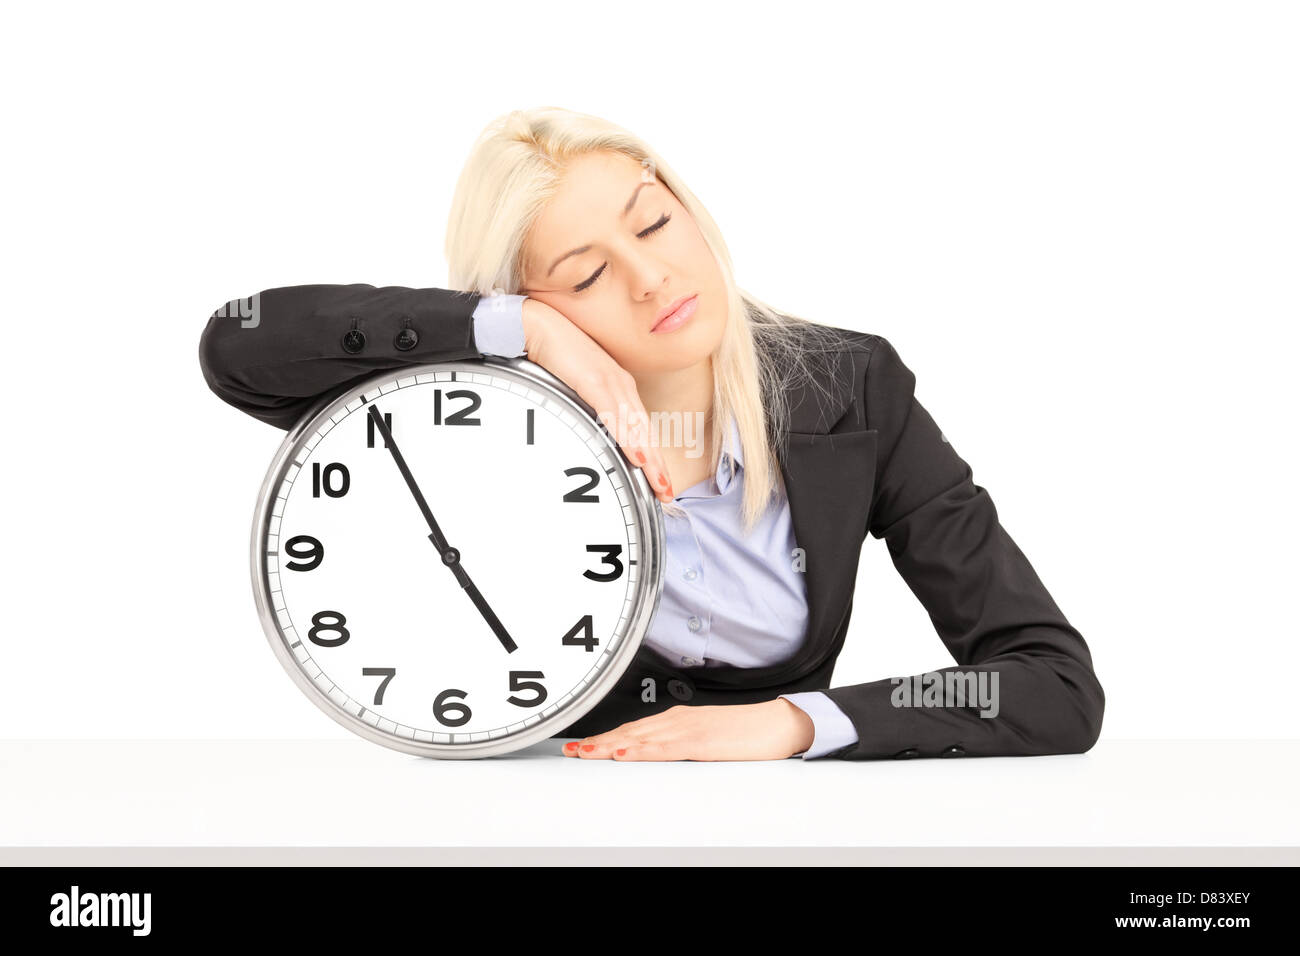 Two businesswomen dormir sur une horloge murale sur le lieu de travail, isolé sur fond blanc Banque D'Images